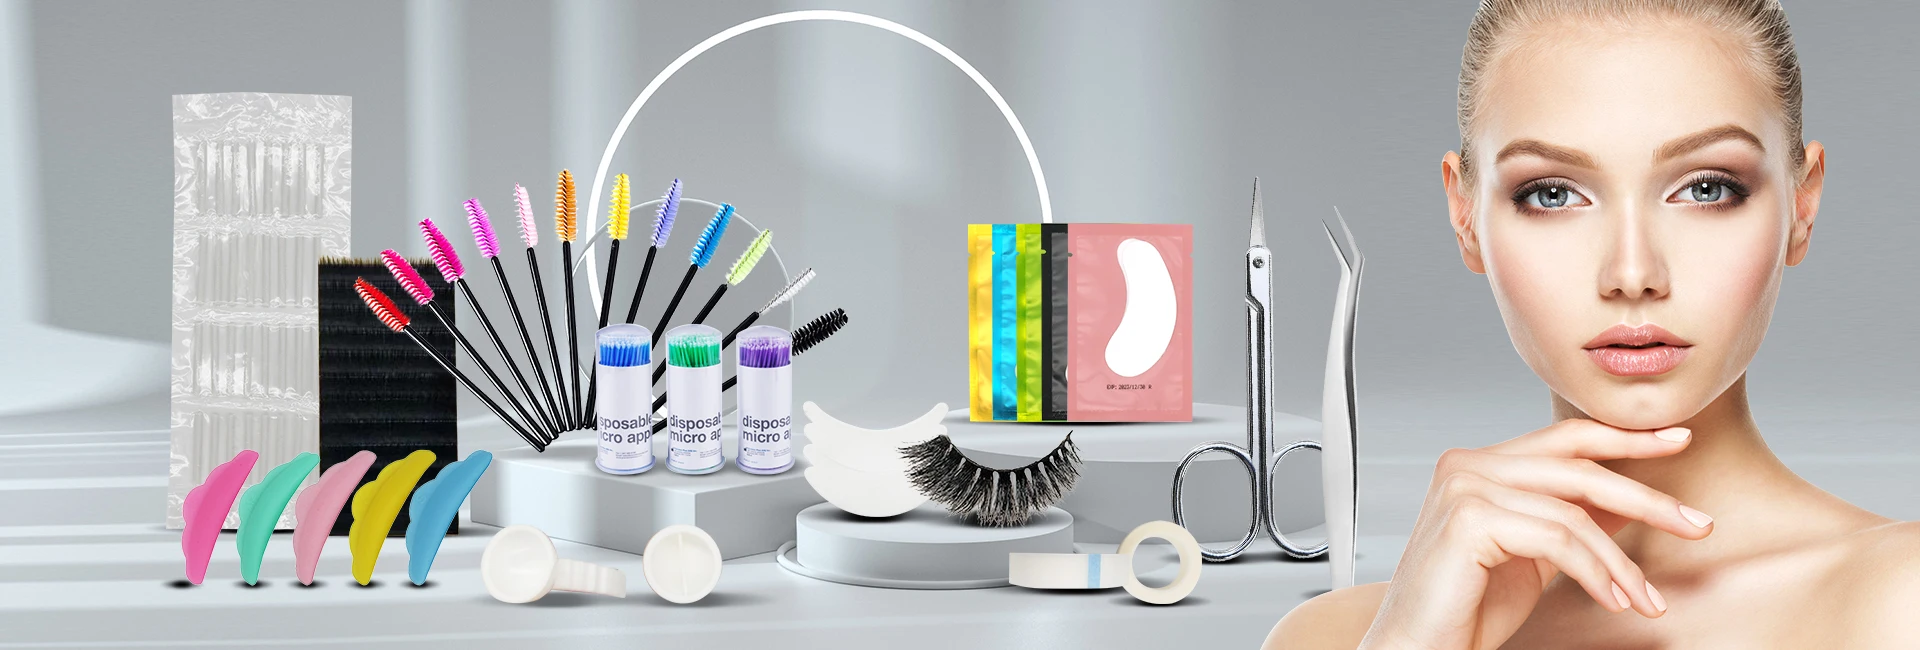 Wholesale Oem 50pcs Disposable Eyelash Extension Brushes Mascara Wands ...